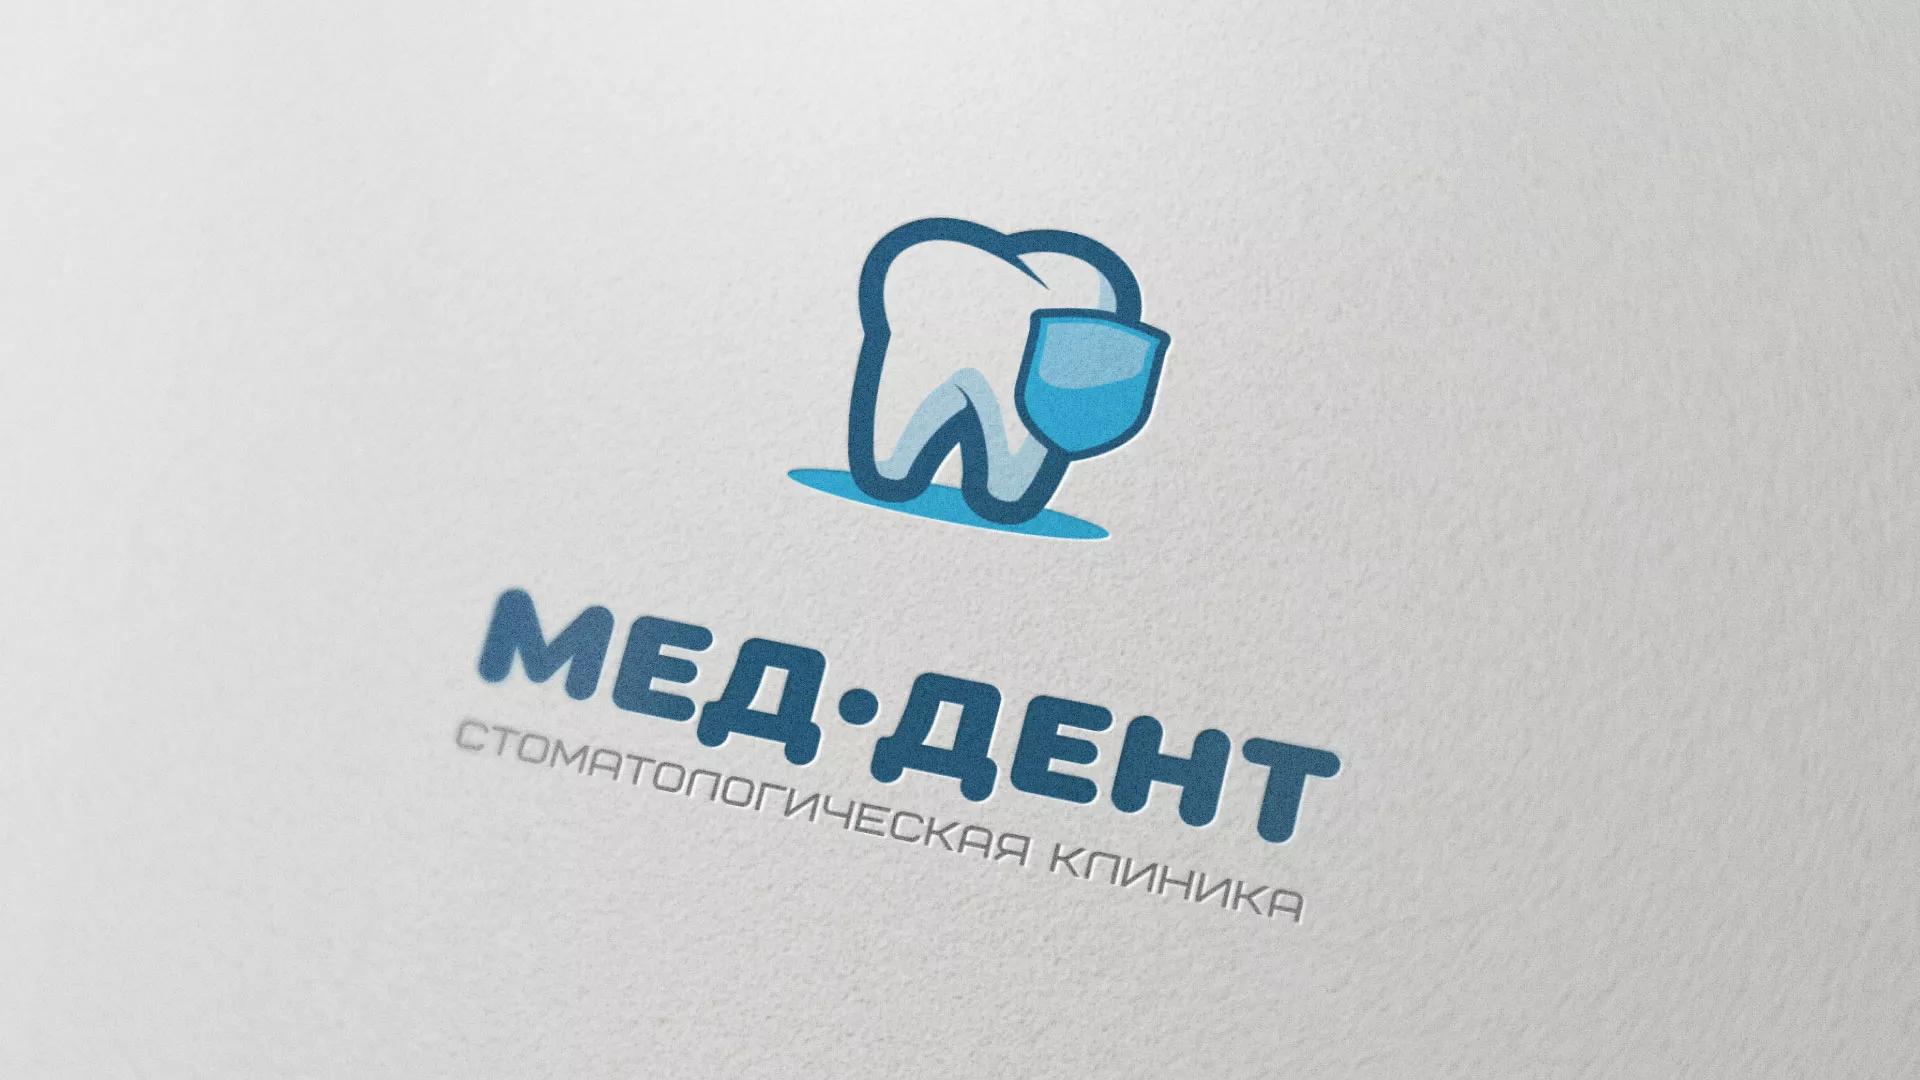 Разработка логотипа стоматологической клиники «МЕД-ДЕНТ» в Апатитах